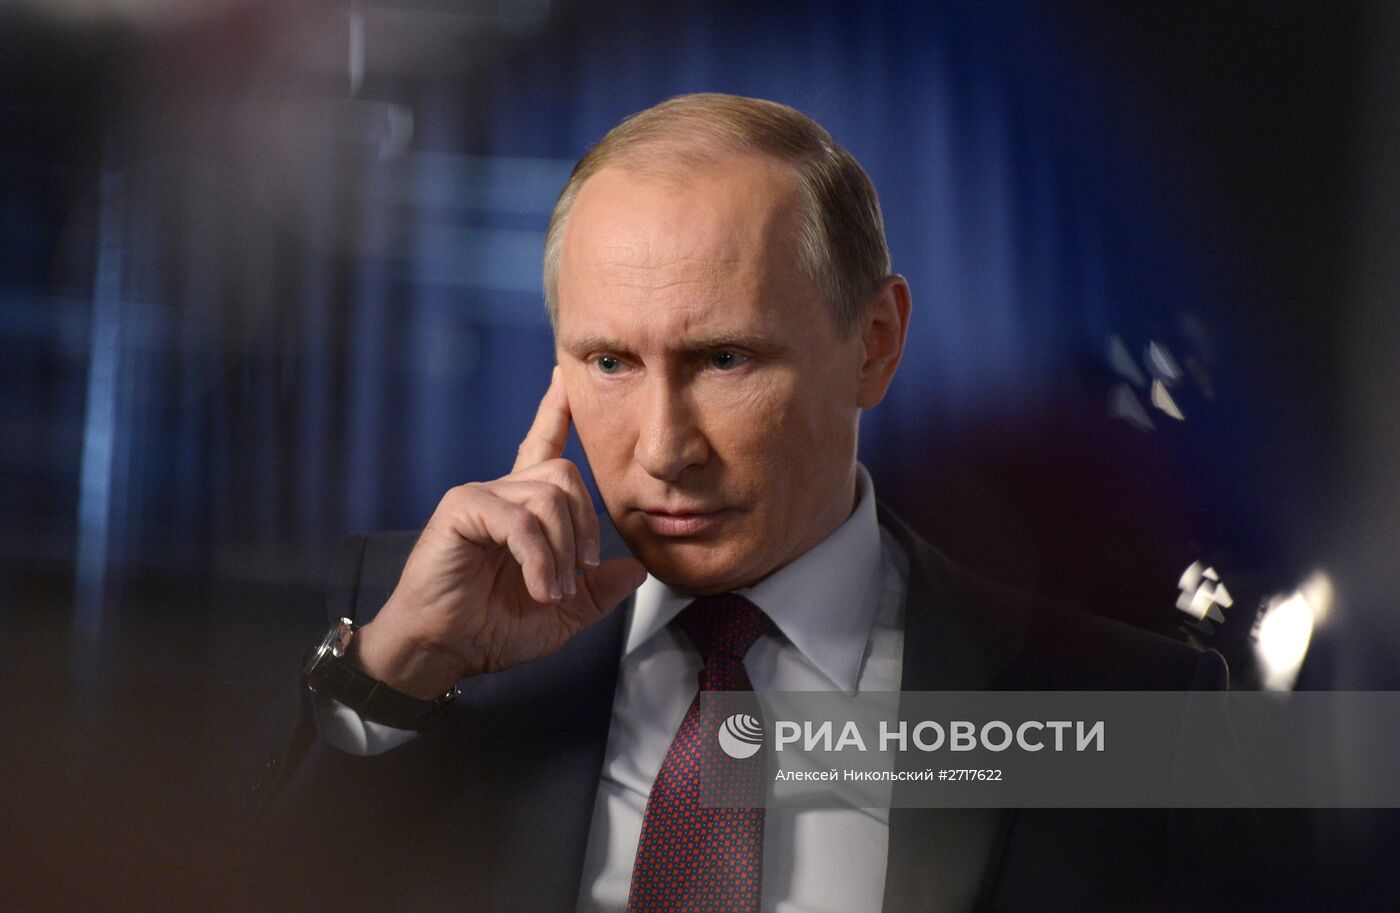 Президент РФ В.Путин дал интервью ведущему телеканала "Россия-1" В. Соловьеву